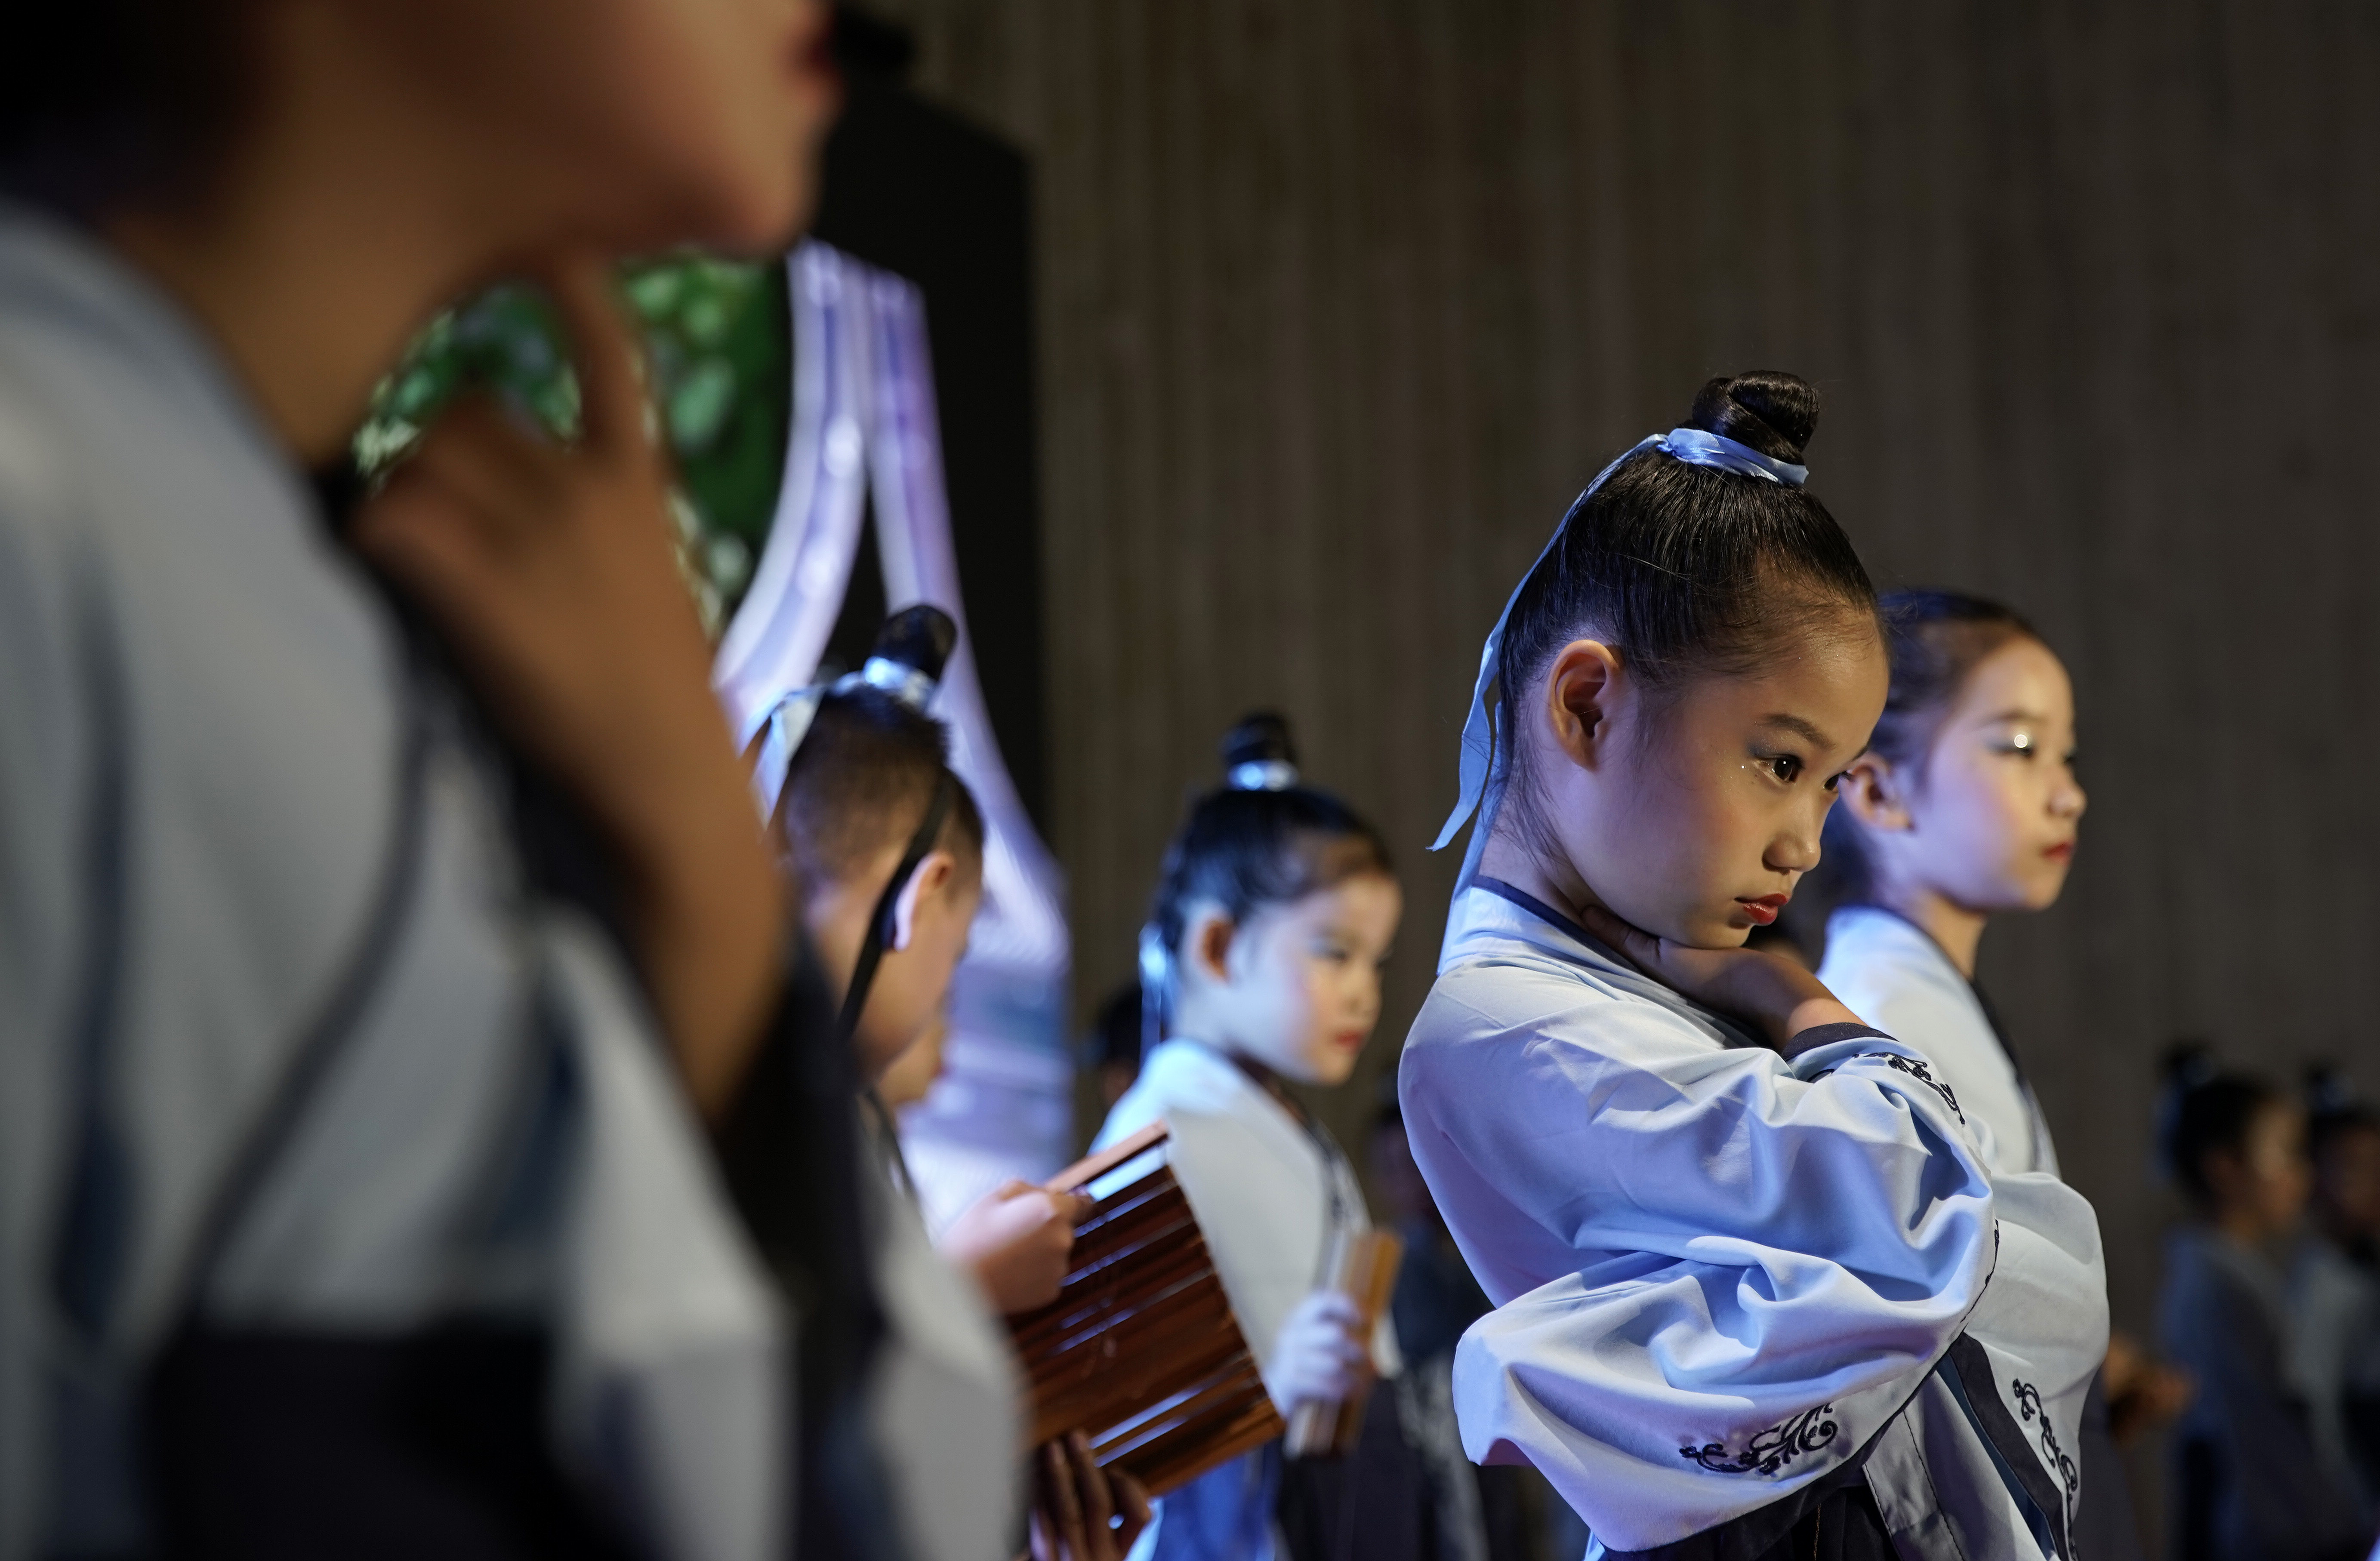 临淄区金茵小学的学生们现场表演经典诵读《管子》名篇《弟子职》（节选）。